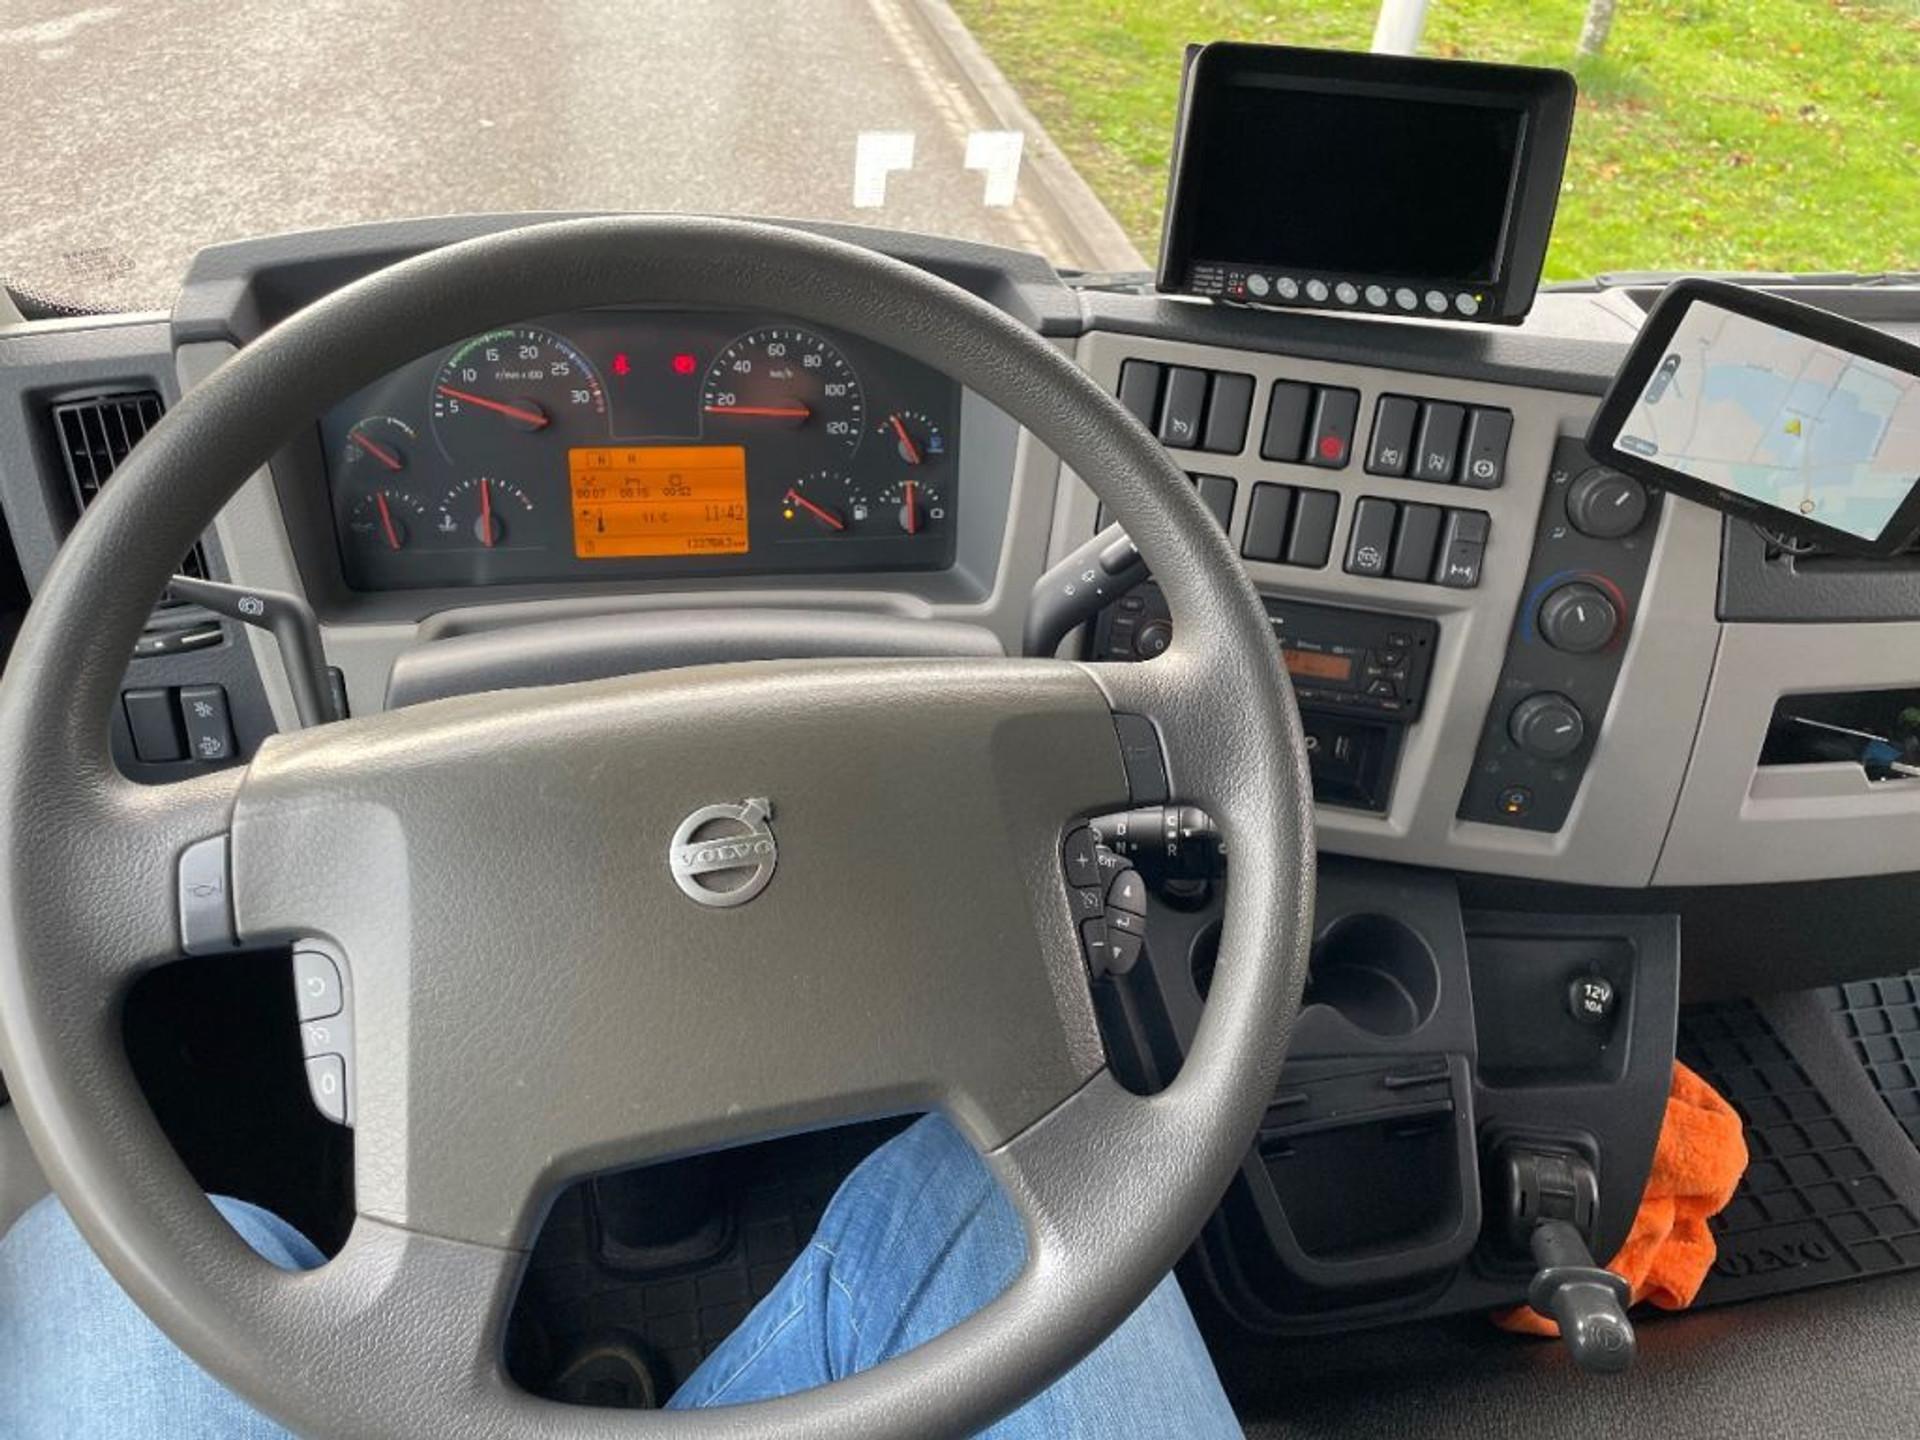 Foto 9 van Volvo FL verhuiswagen 2019 only 133.000 km